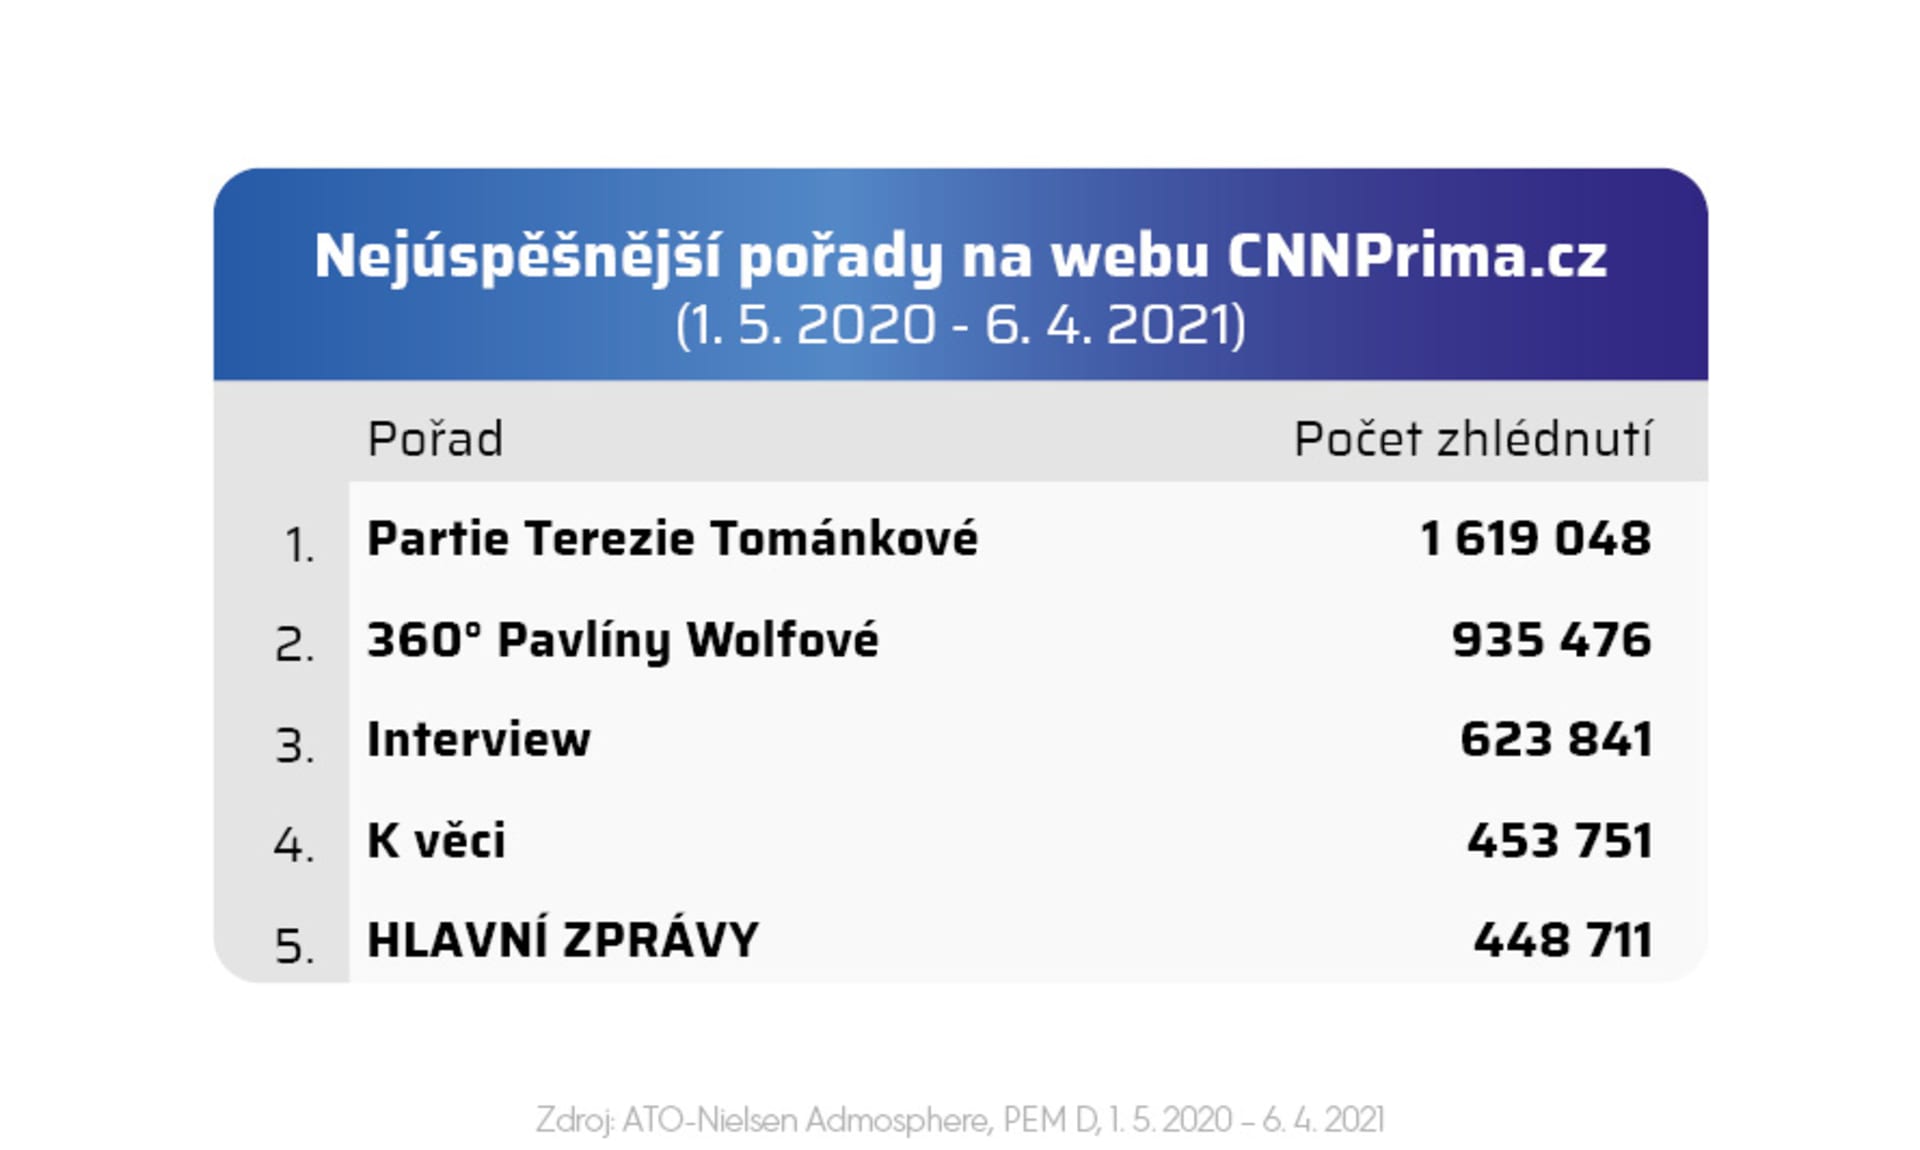 Nejúspěšnější pořady na webu CNNPrima.cz